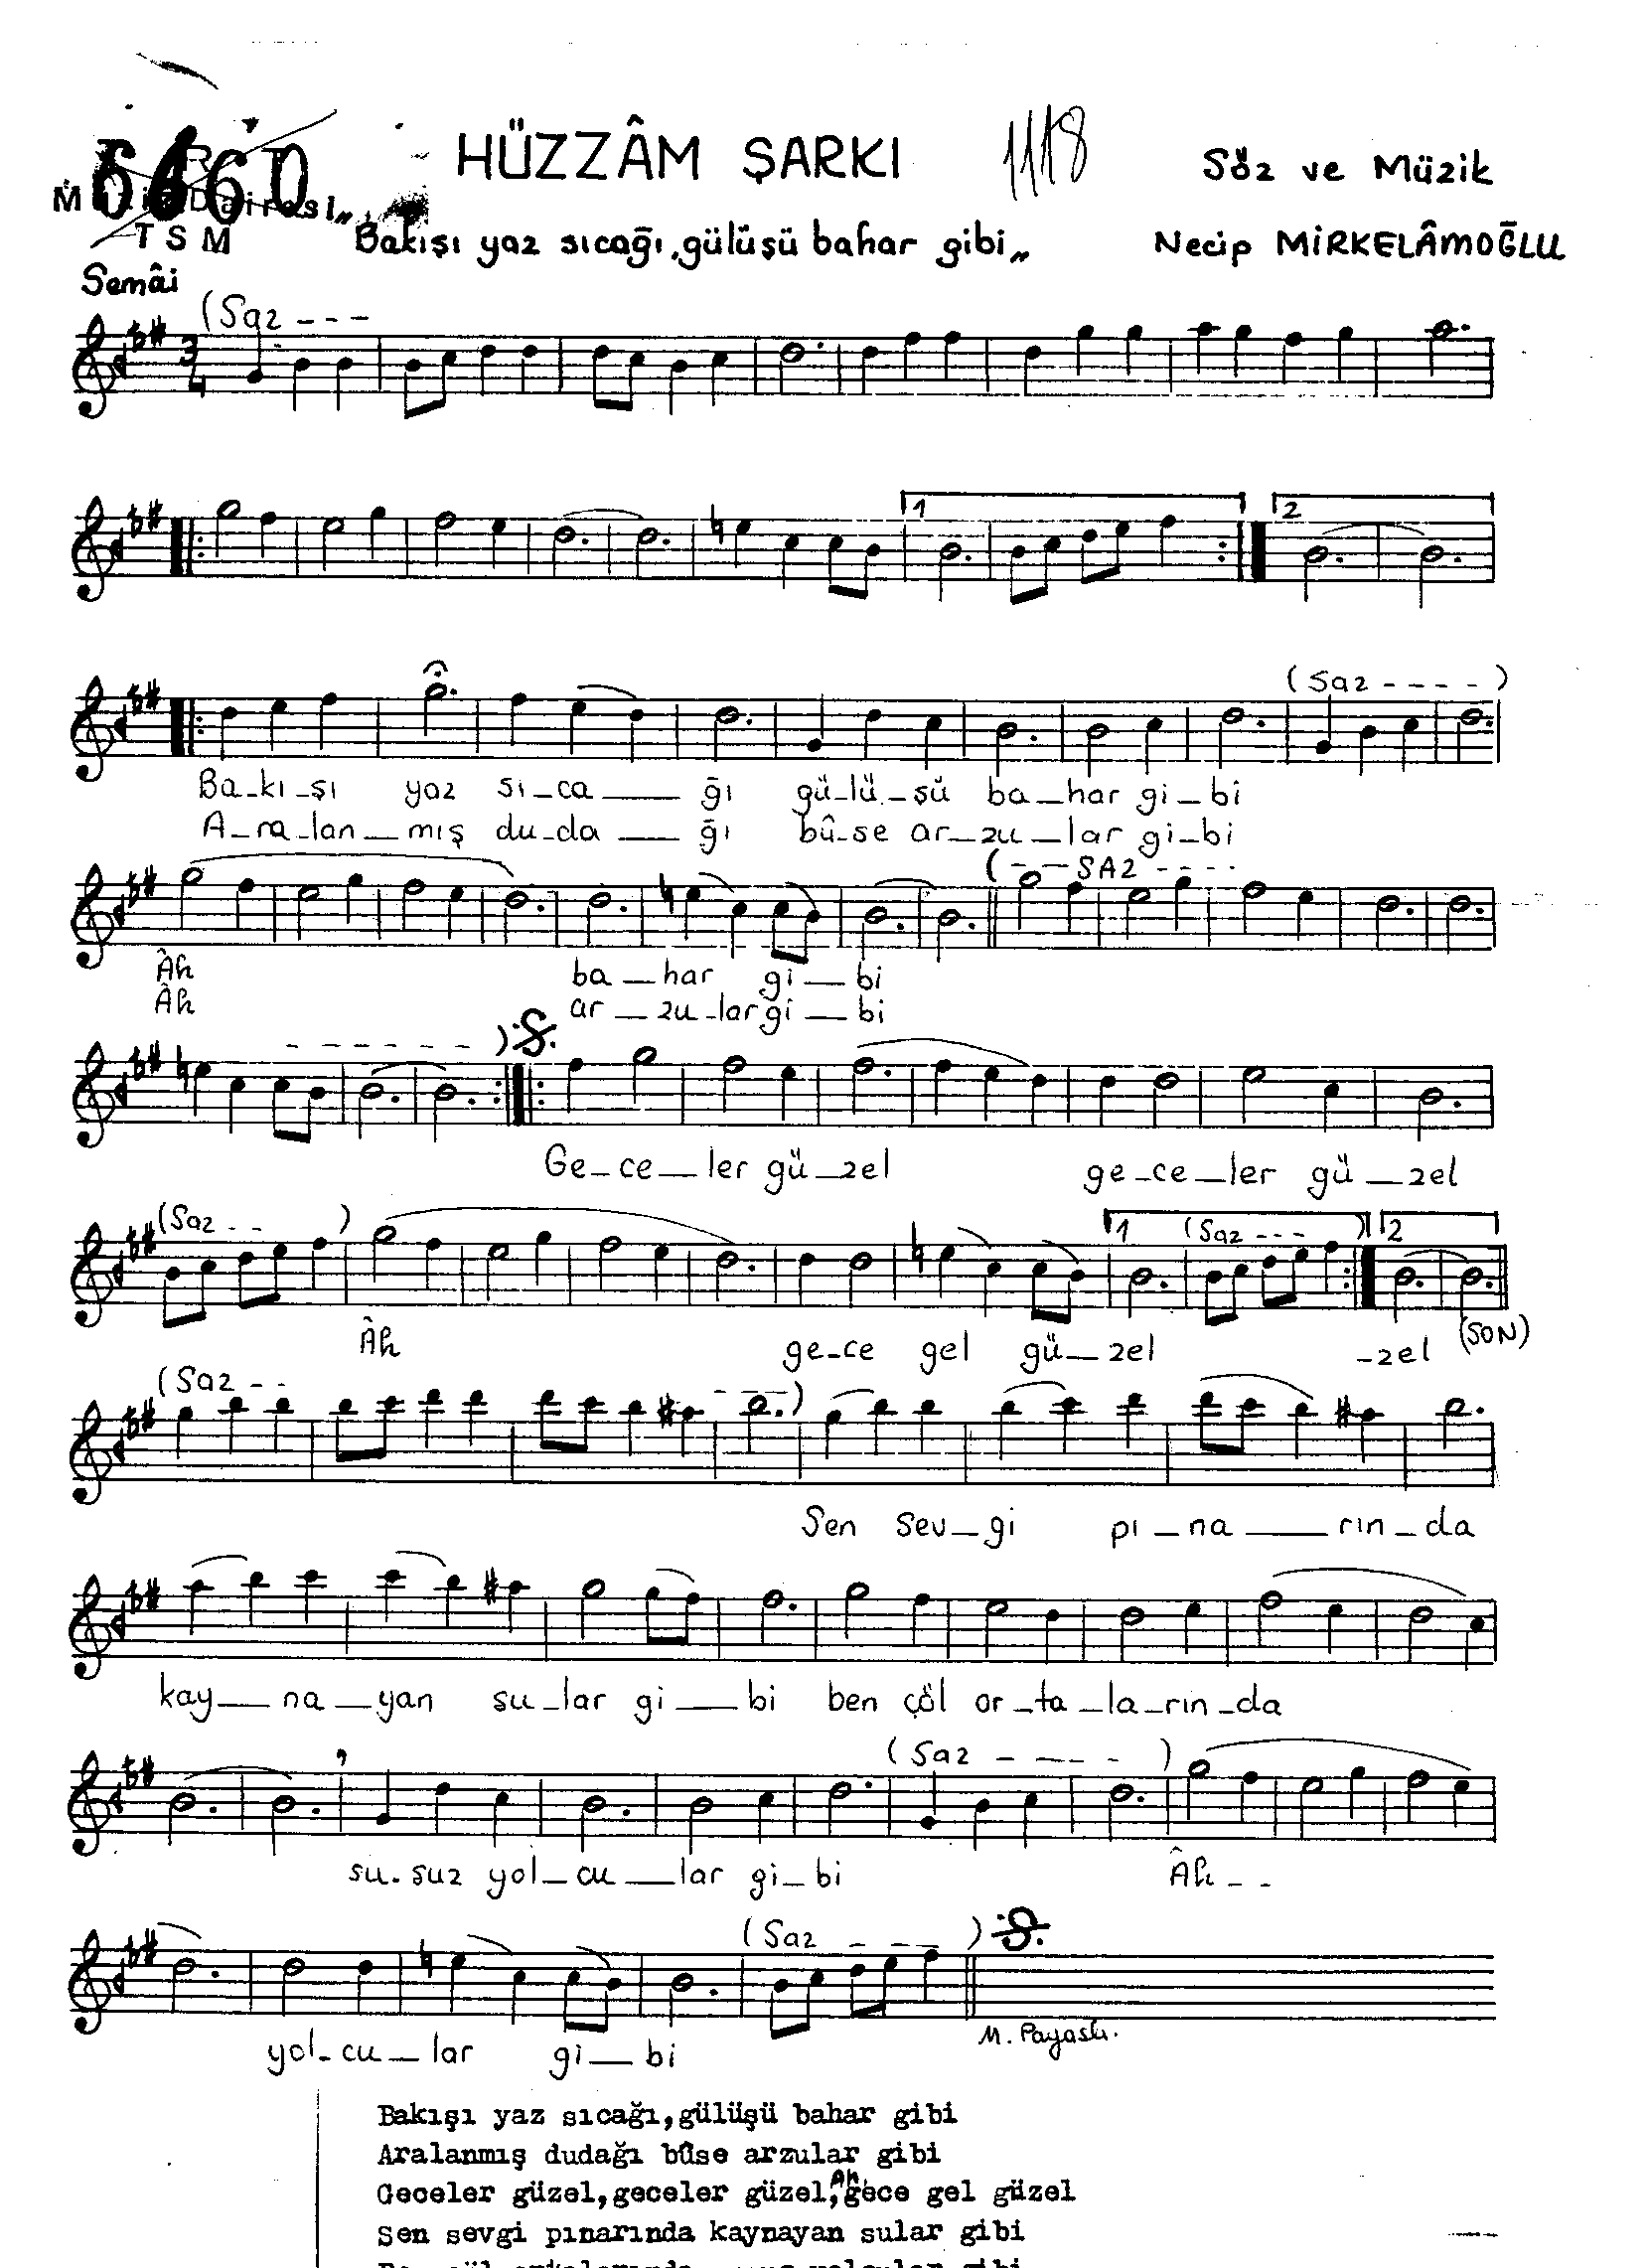 Hüzzâm - Şarkı - Necip Mirkelâmoğlu - Sayfa 1